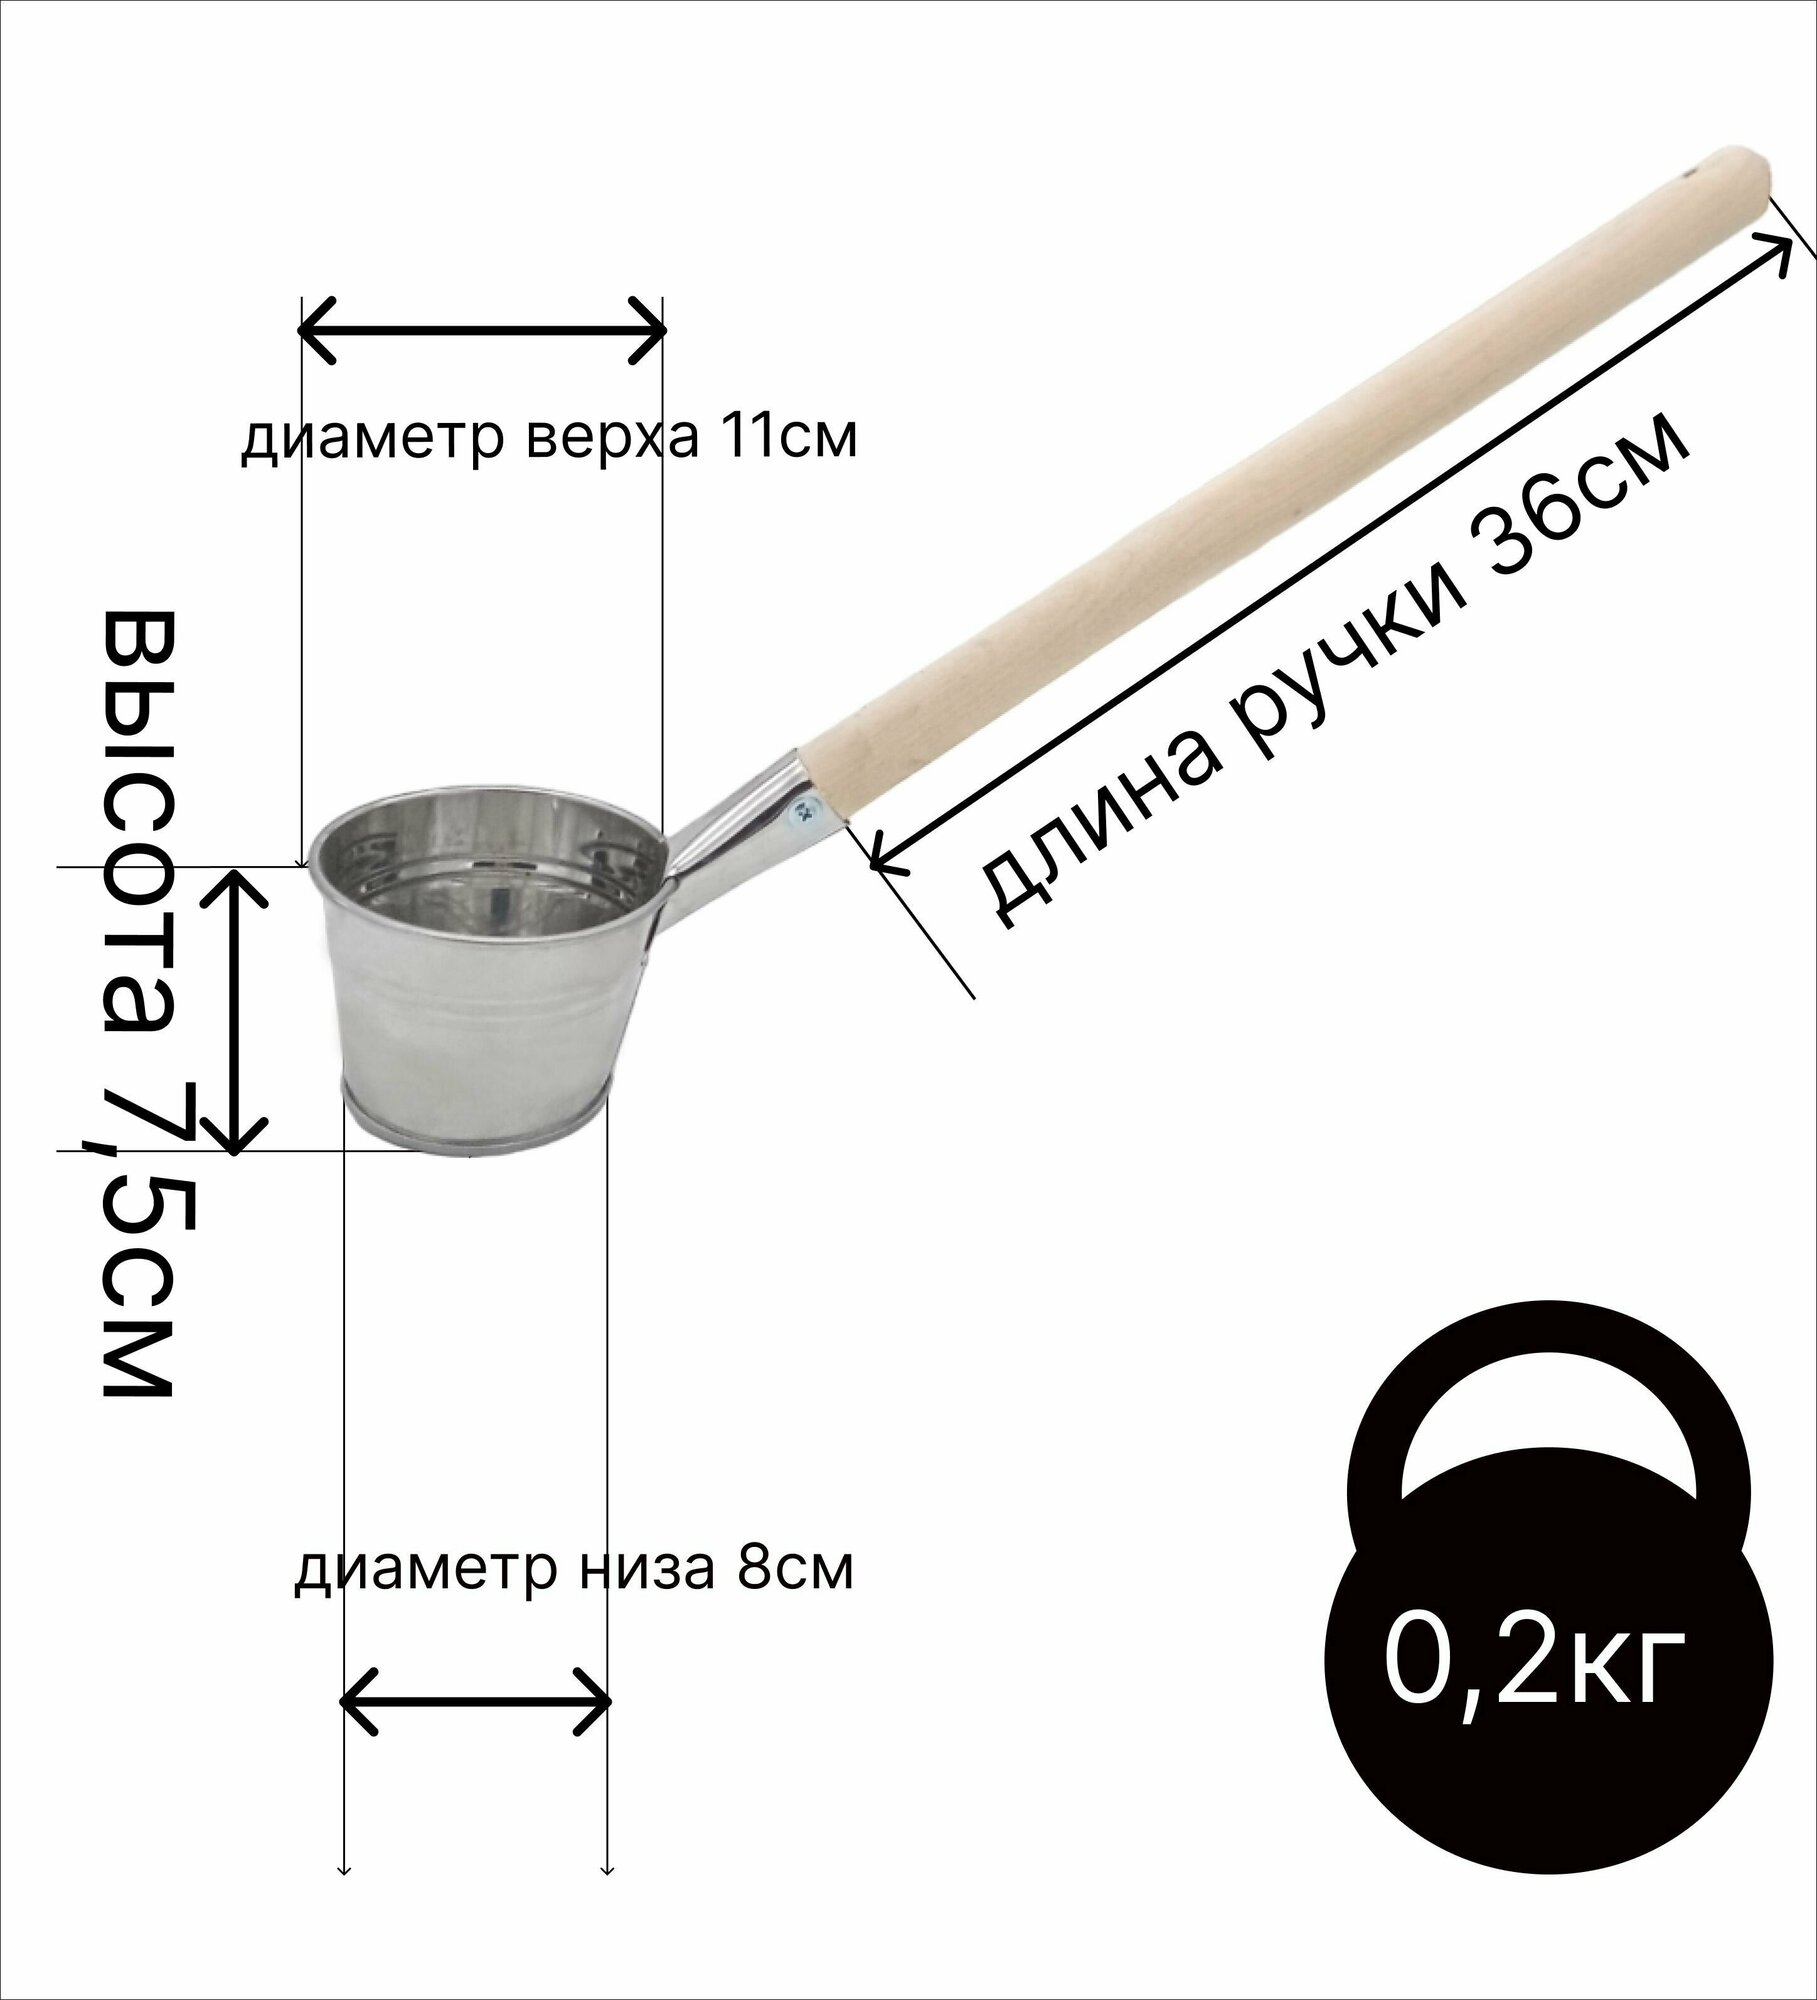 Ковш для бани Урал инвест набор 0,5 л оцинкованный и совок зольный - фотография № 2